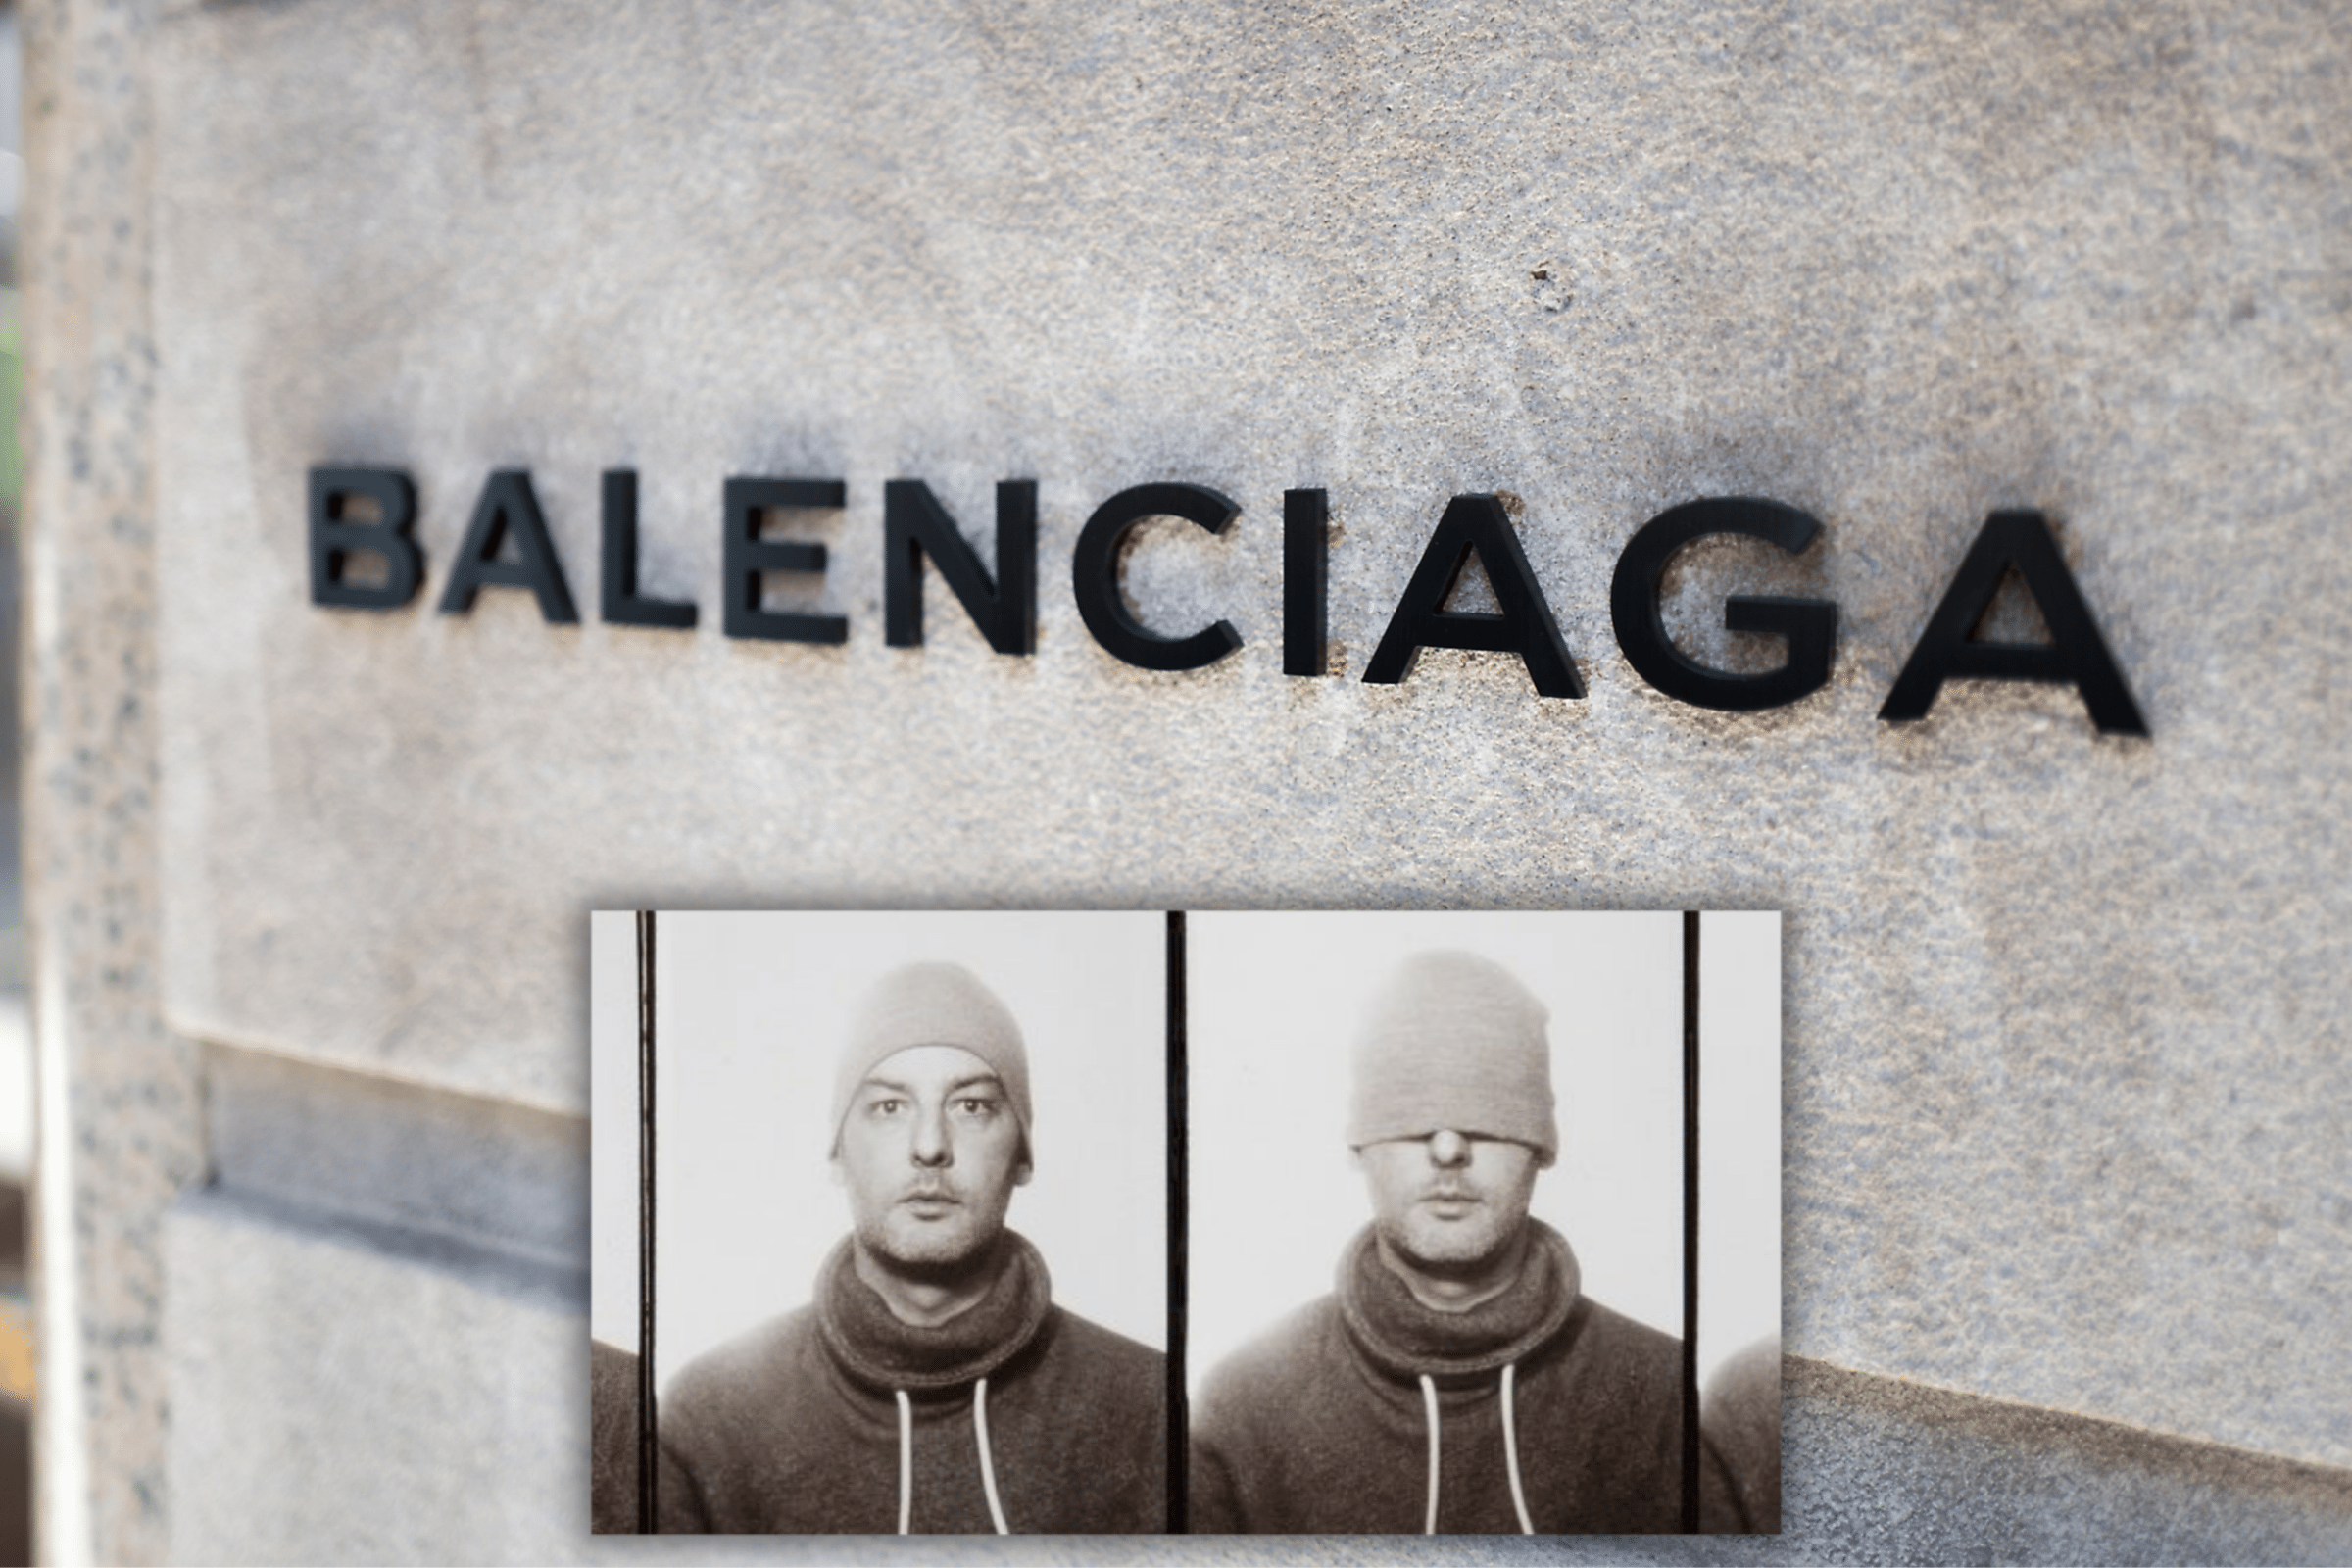 Balenciaga Photographer Breaks Silence Following Controversial Child Ad